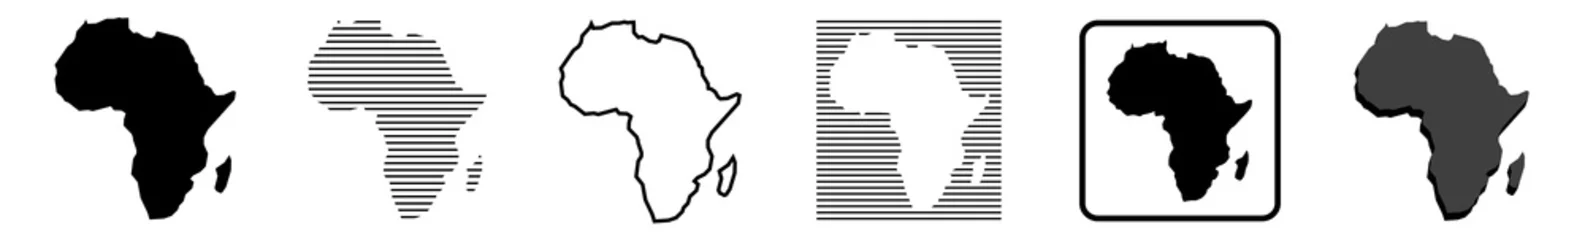 Foto op Aluminium Afrika kaart   Afrikaanse grens   werelddeel   variaties © endstern